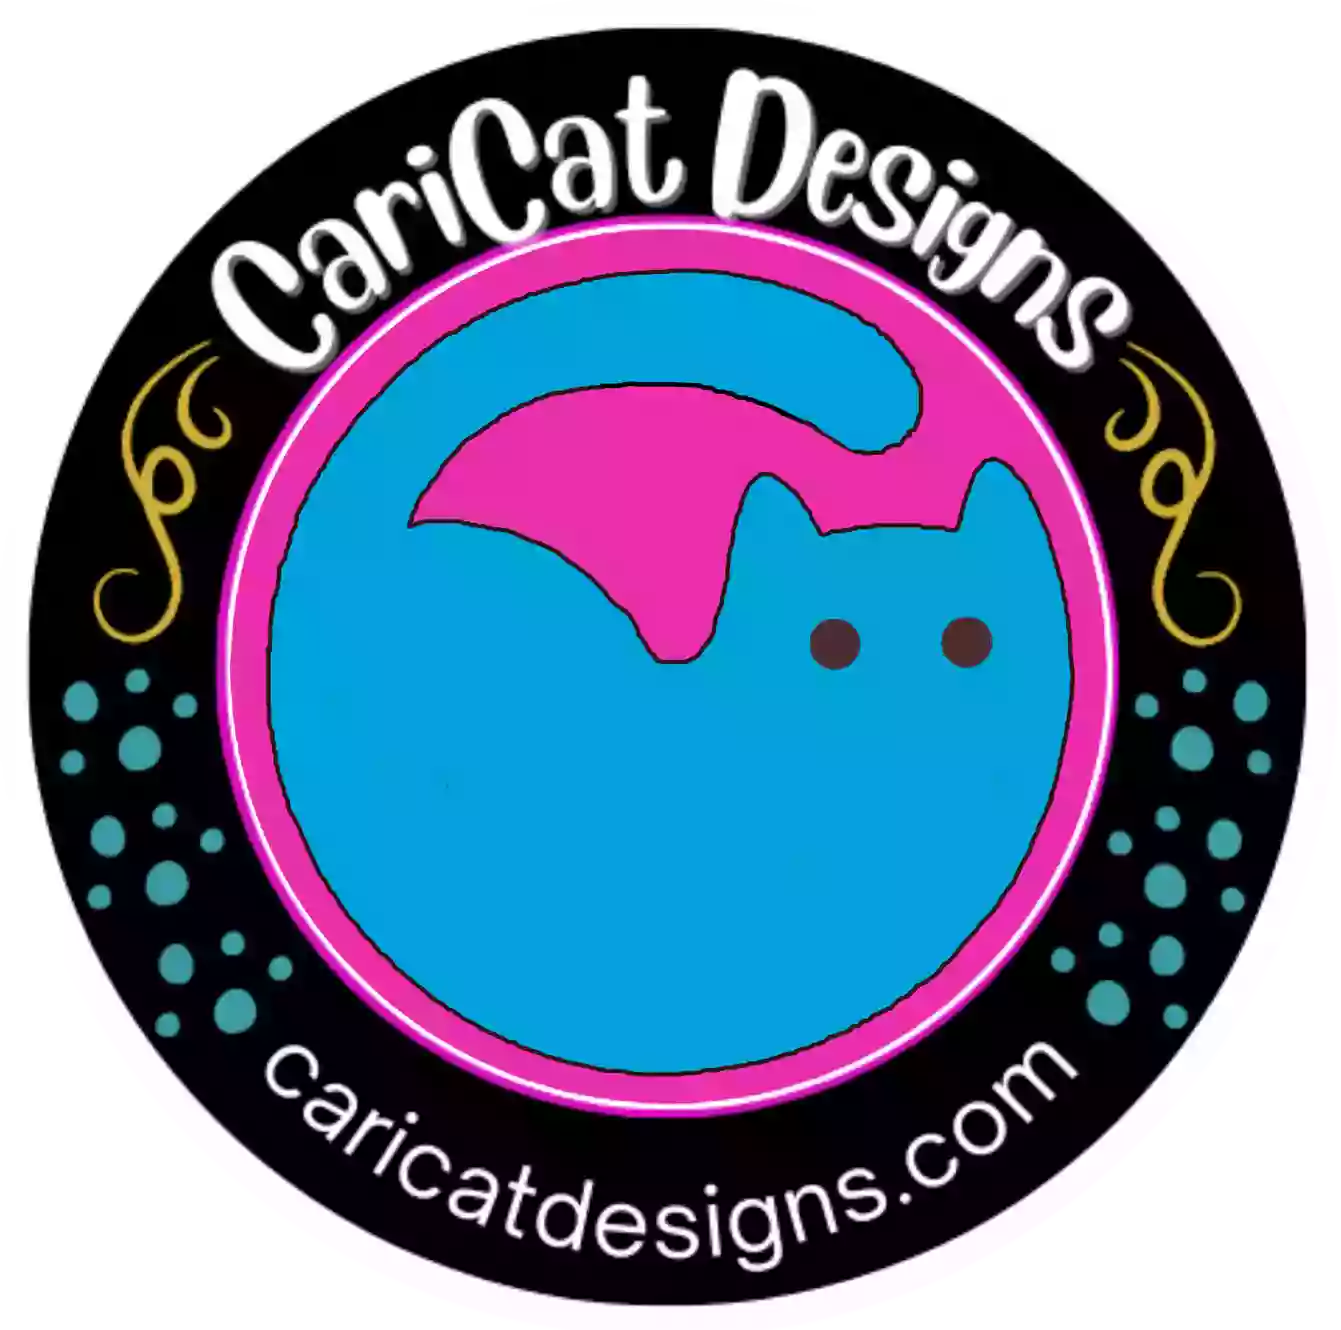 CariCat Designs